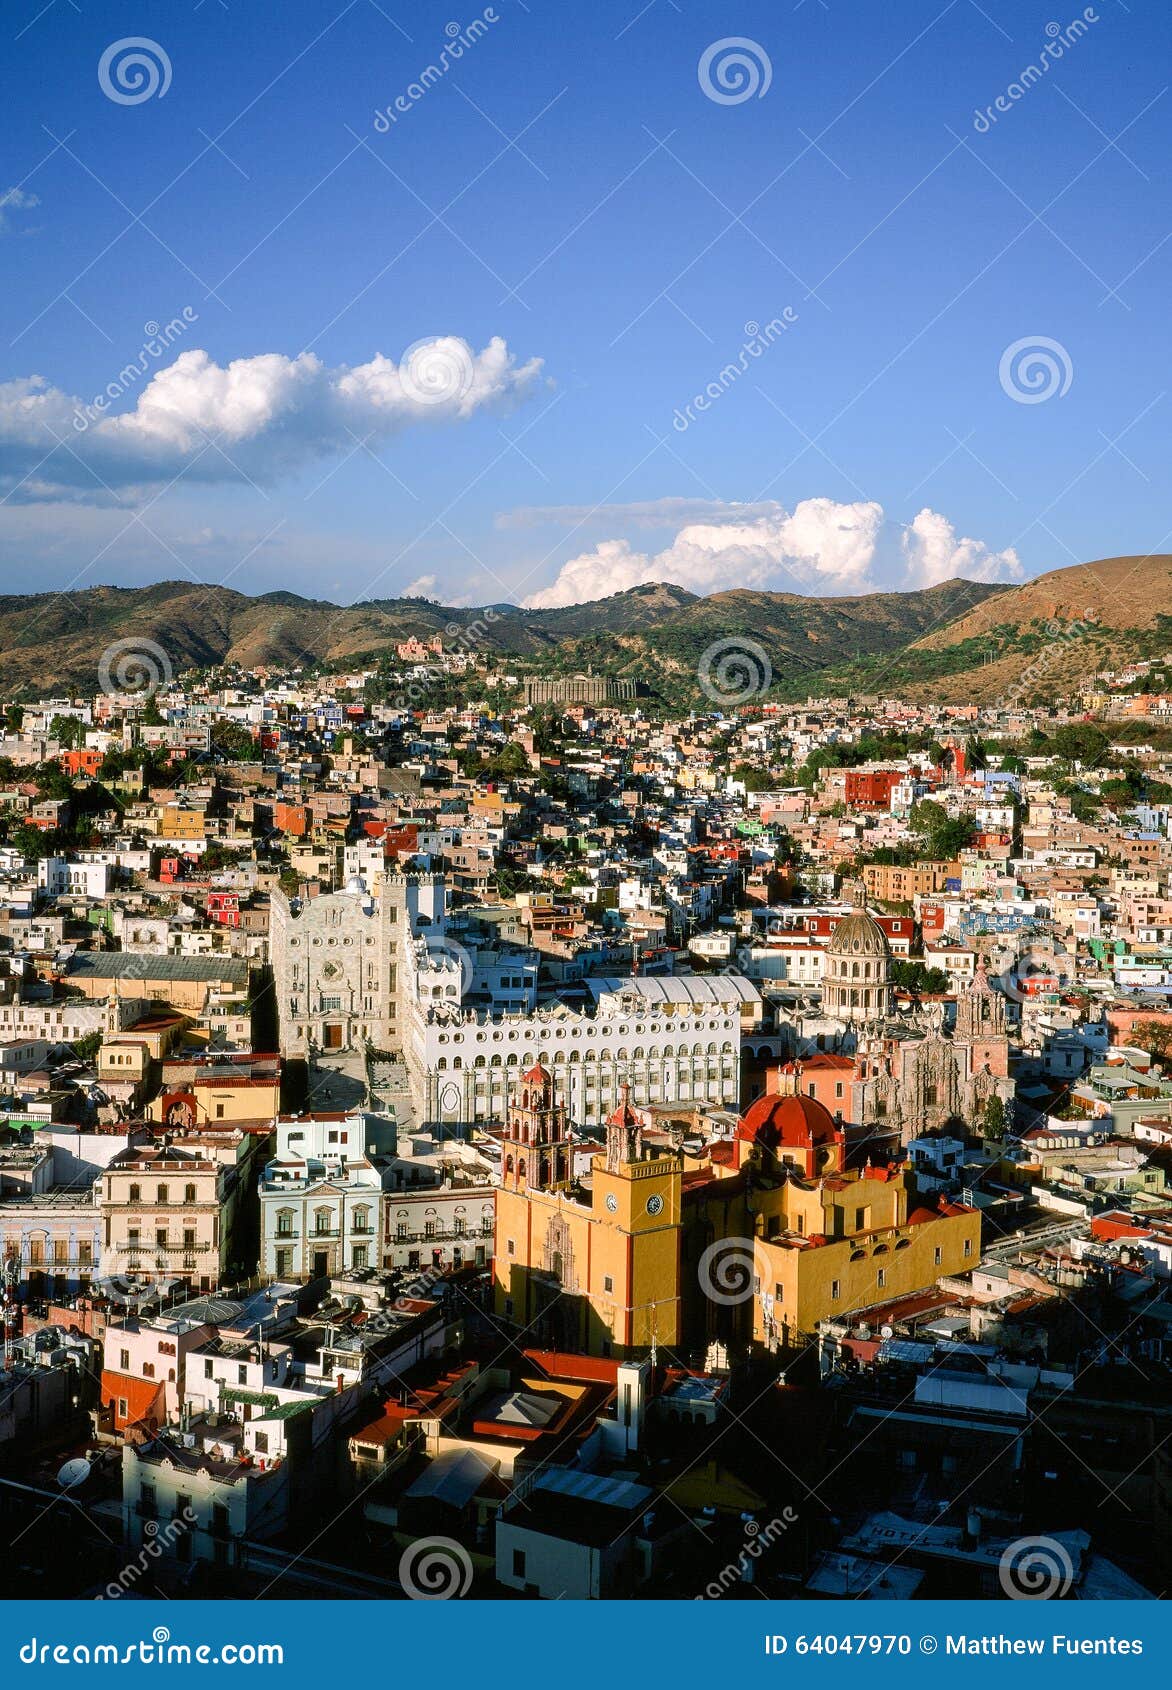 cityscape of guanajuato, mexico